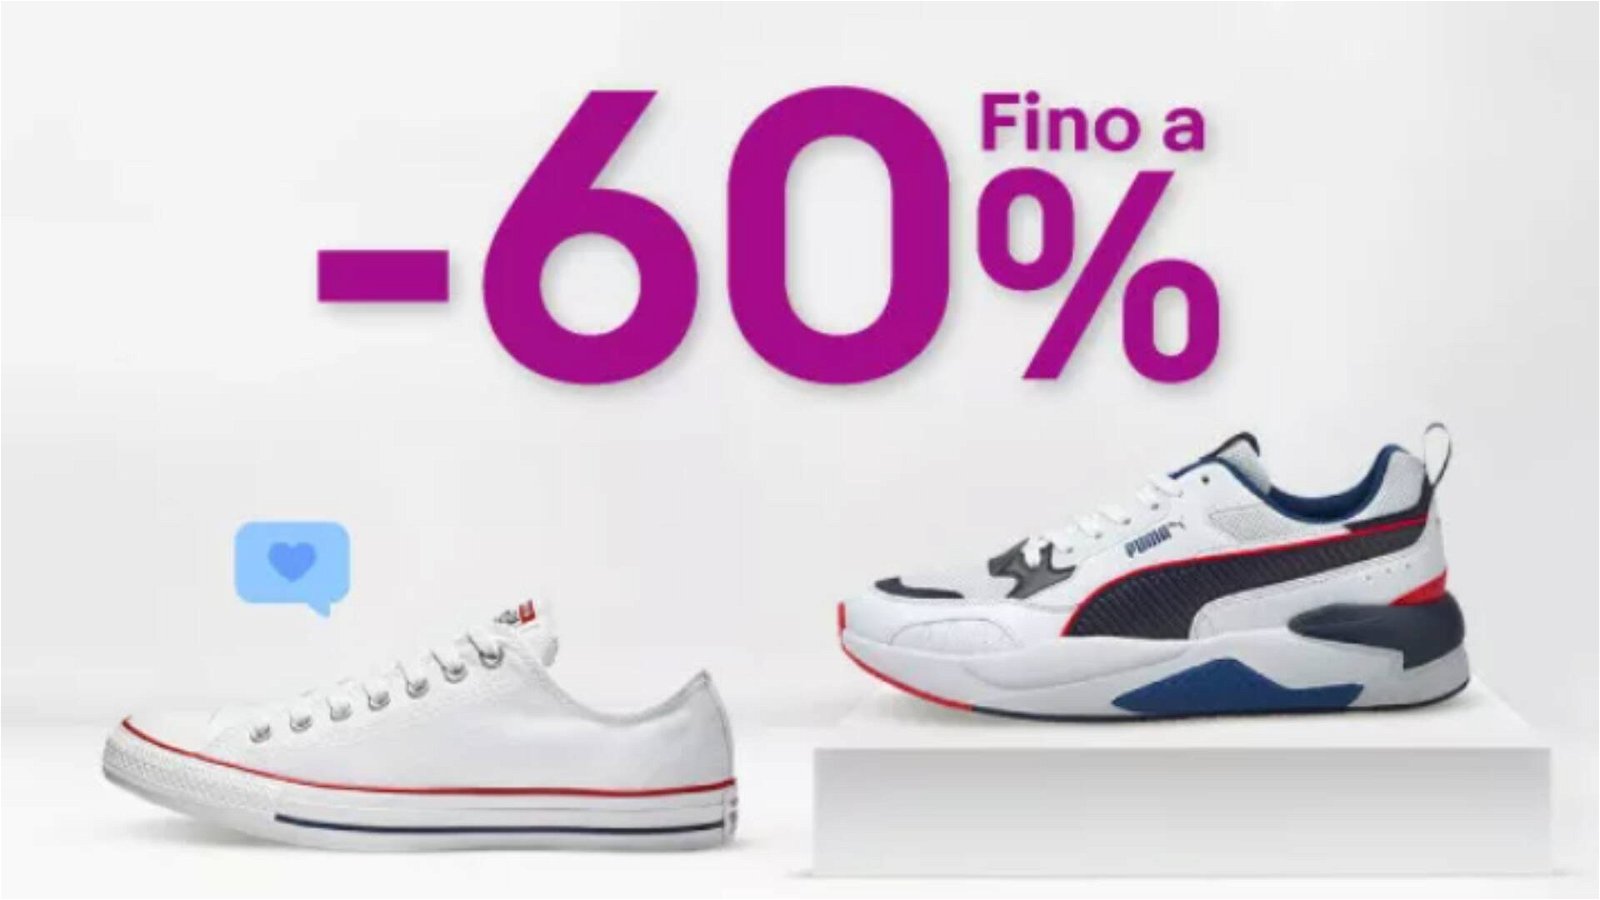 Immagine di Sneakers: fino al 60% di sconto sui migliori brand da eBay